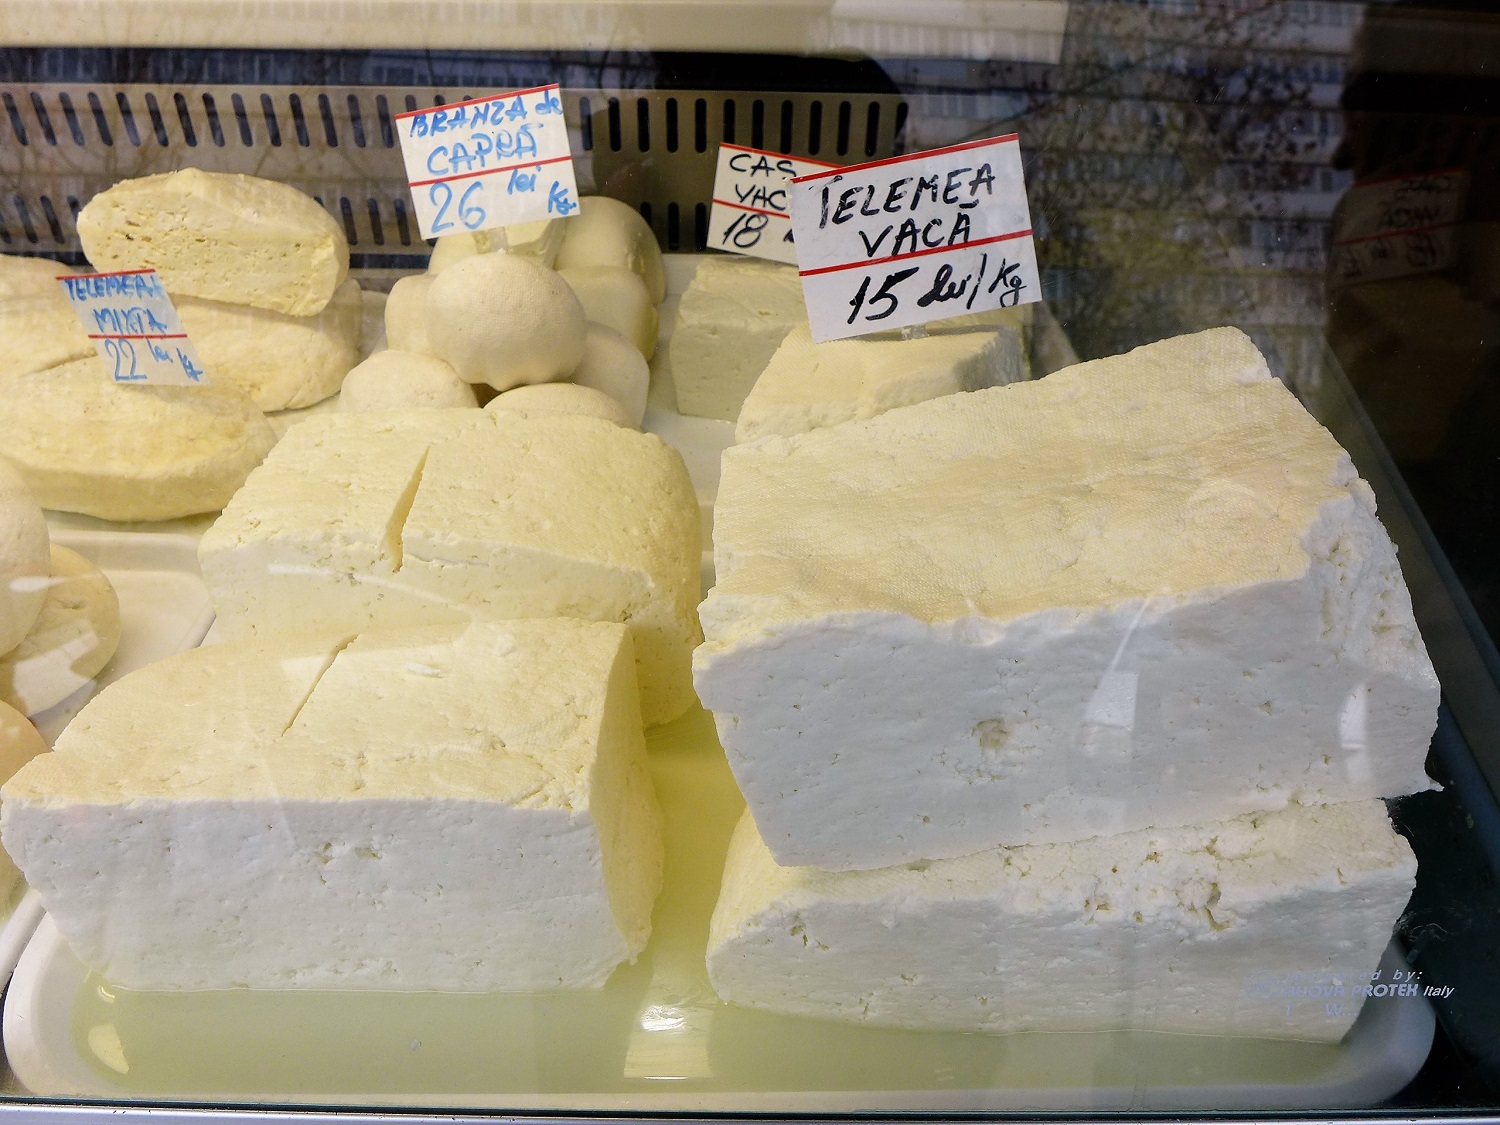 La telemea, fromage typique de Roumanie. Ça ressemble à de la feta.